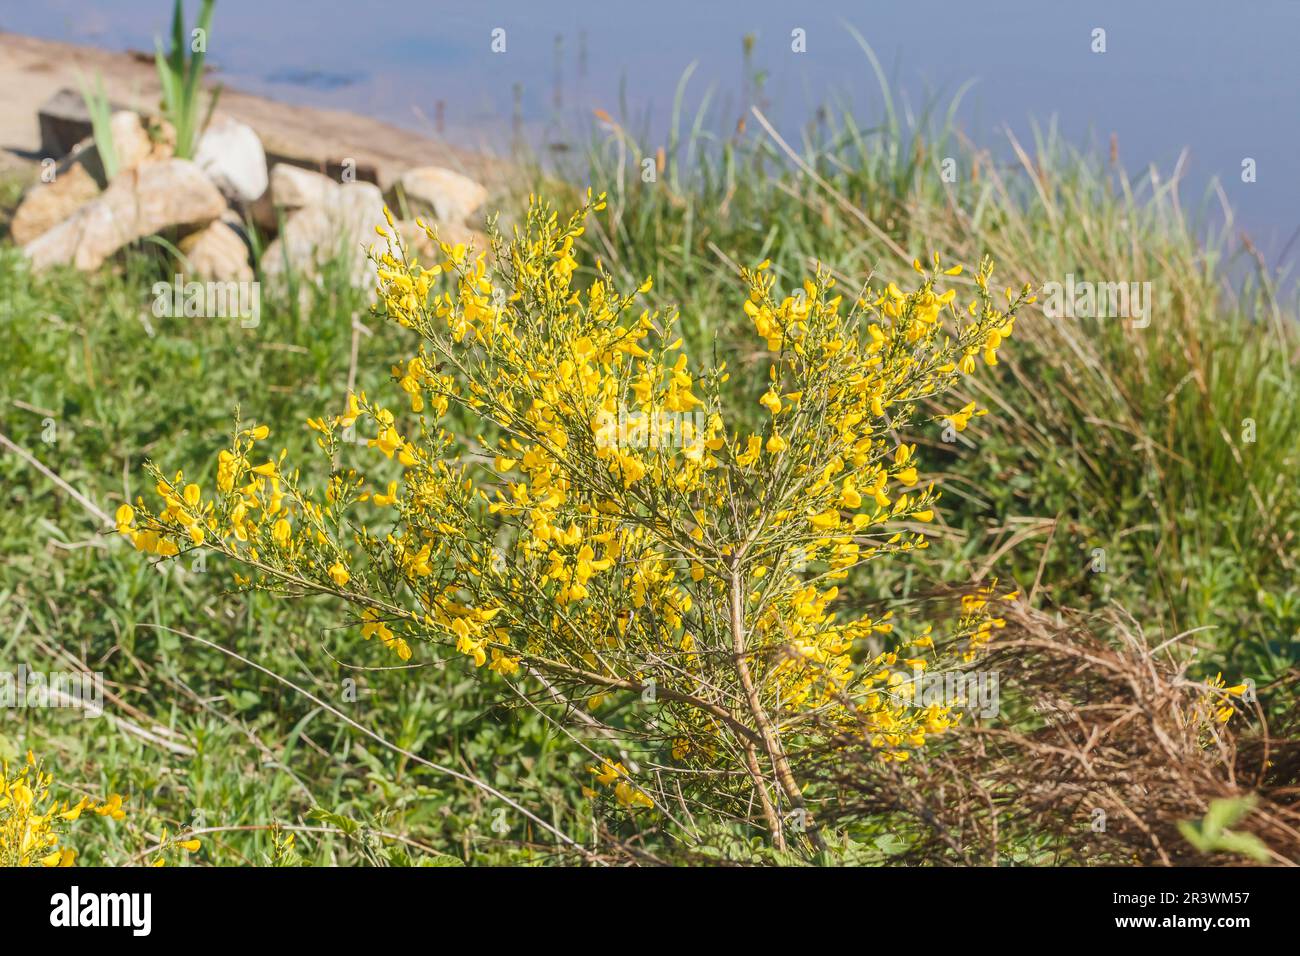 Cytisus scoparius, Besenginster, Geißklee, Gewöhnlicher Besenginster - Cytisus scoparius arbusto en primavera, conocido como escoba común, escoba escocesa, inglés Foto de stock